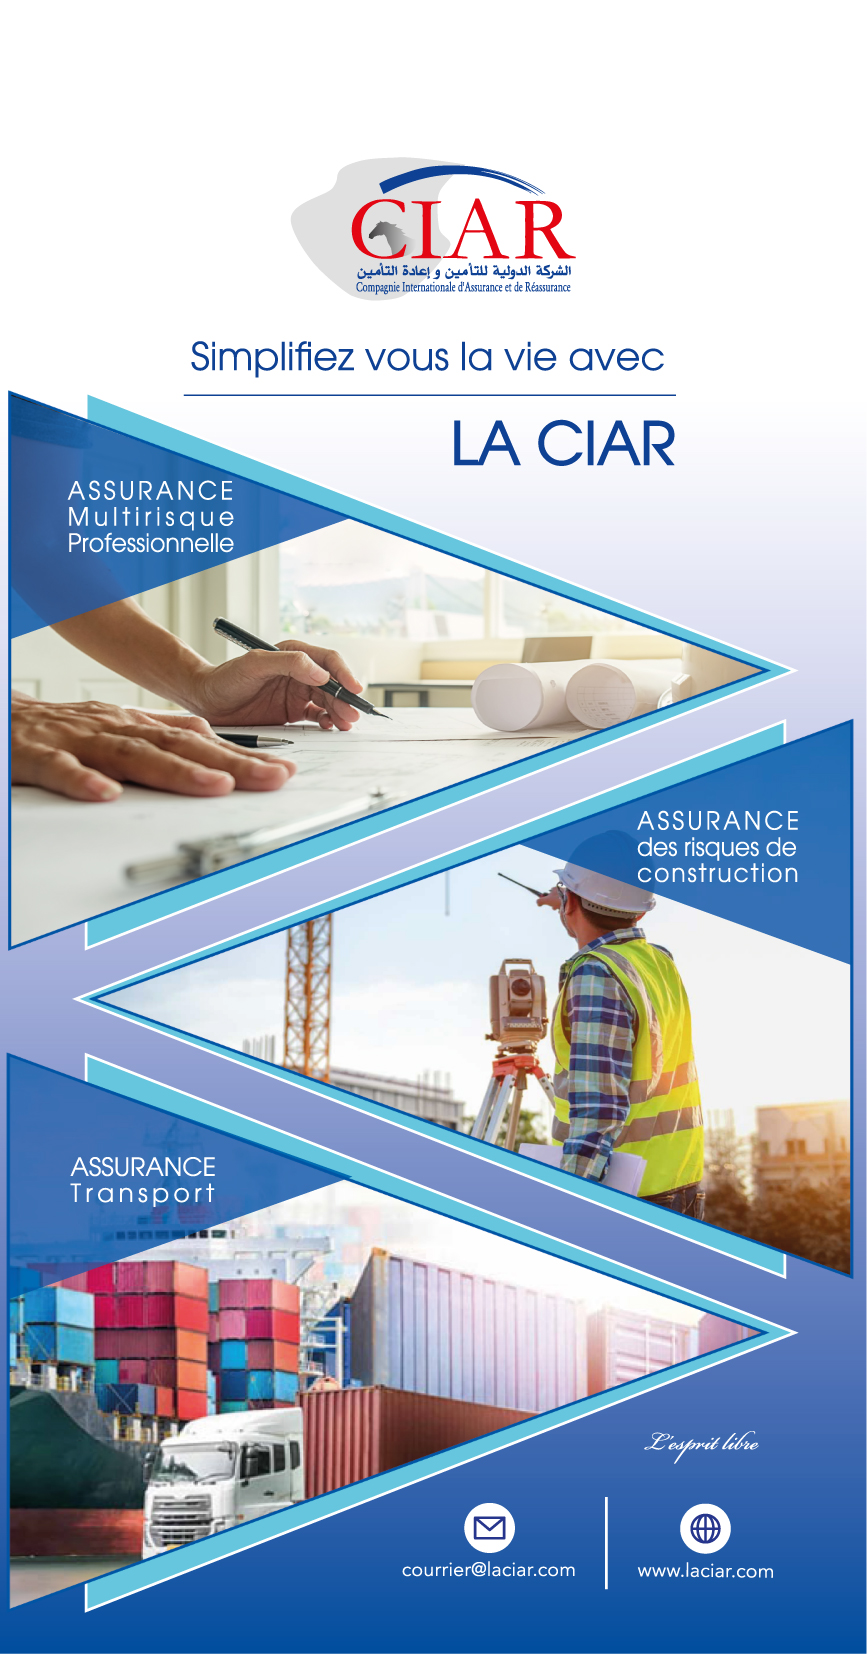 CIAR-Compagnie Internationale d'Assurance & de Réassurance